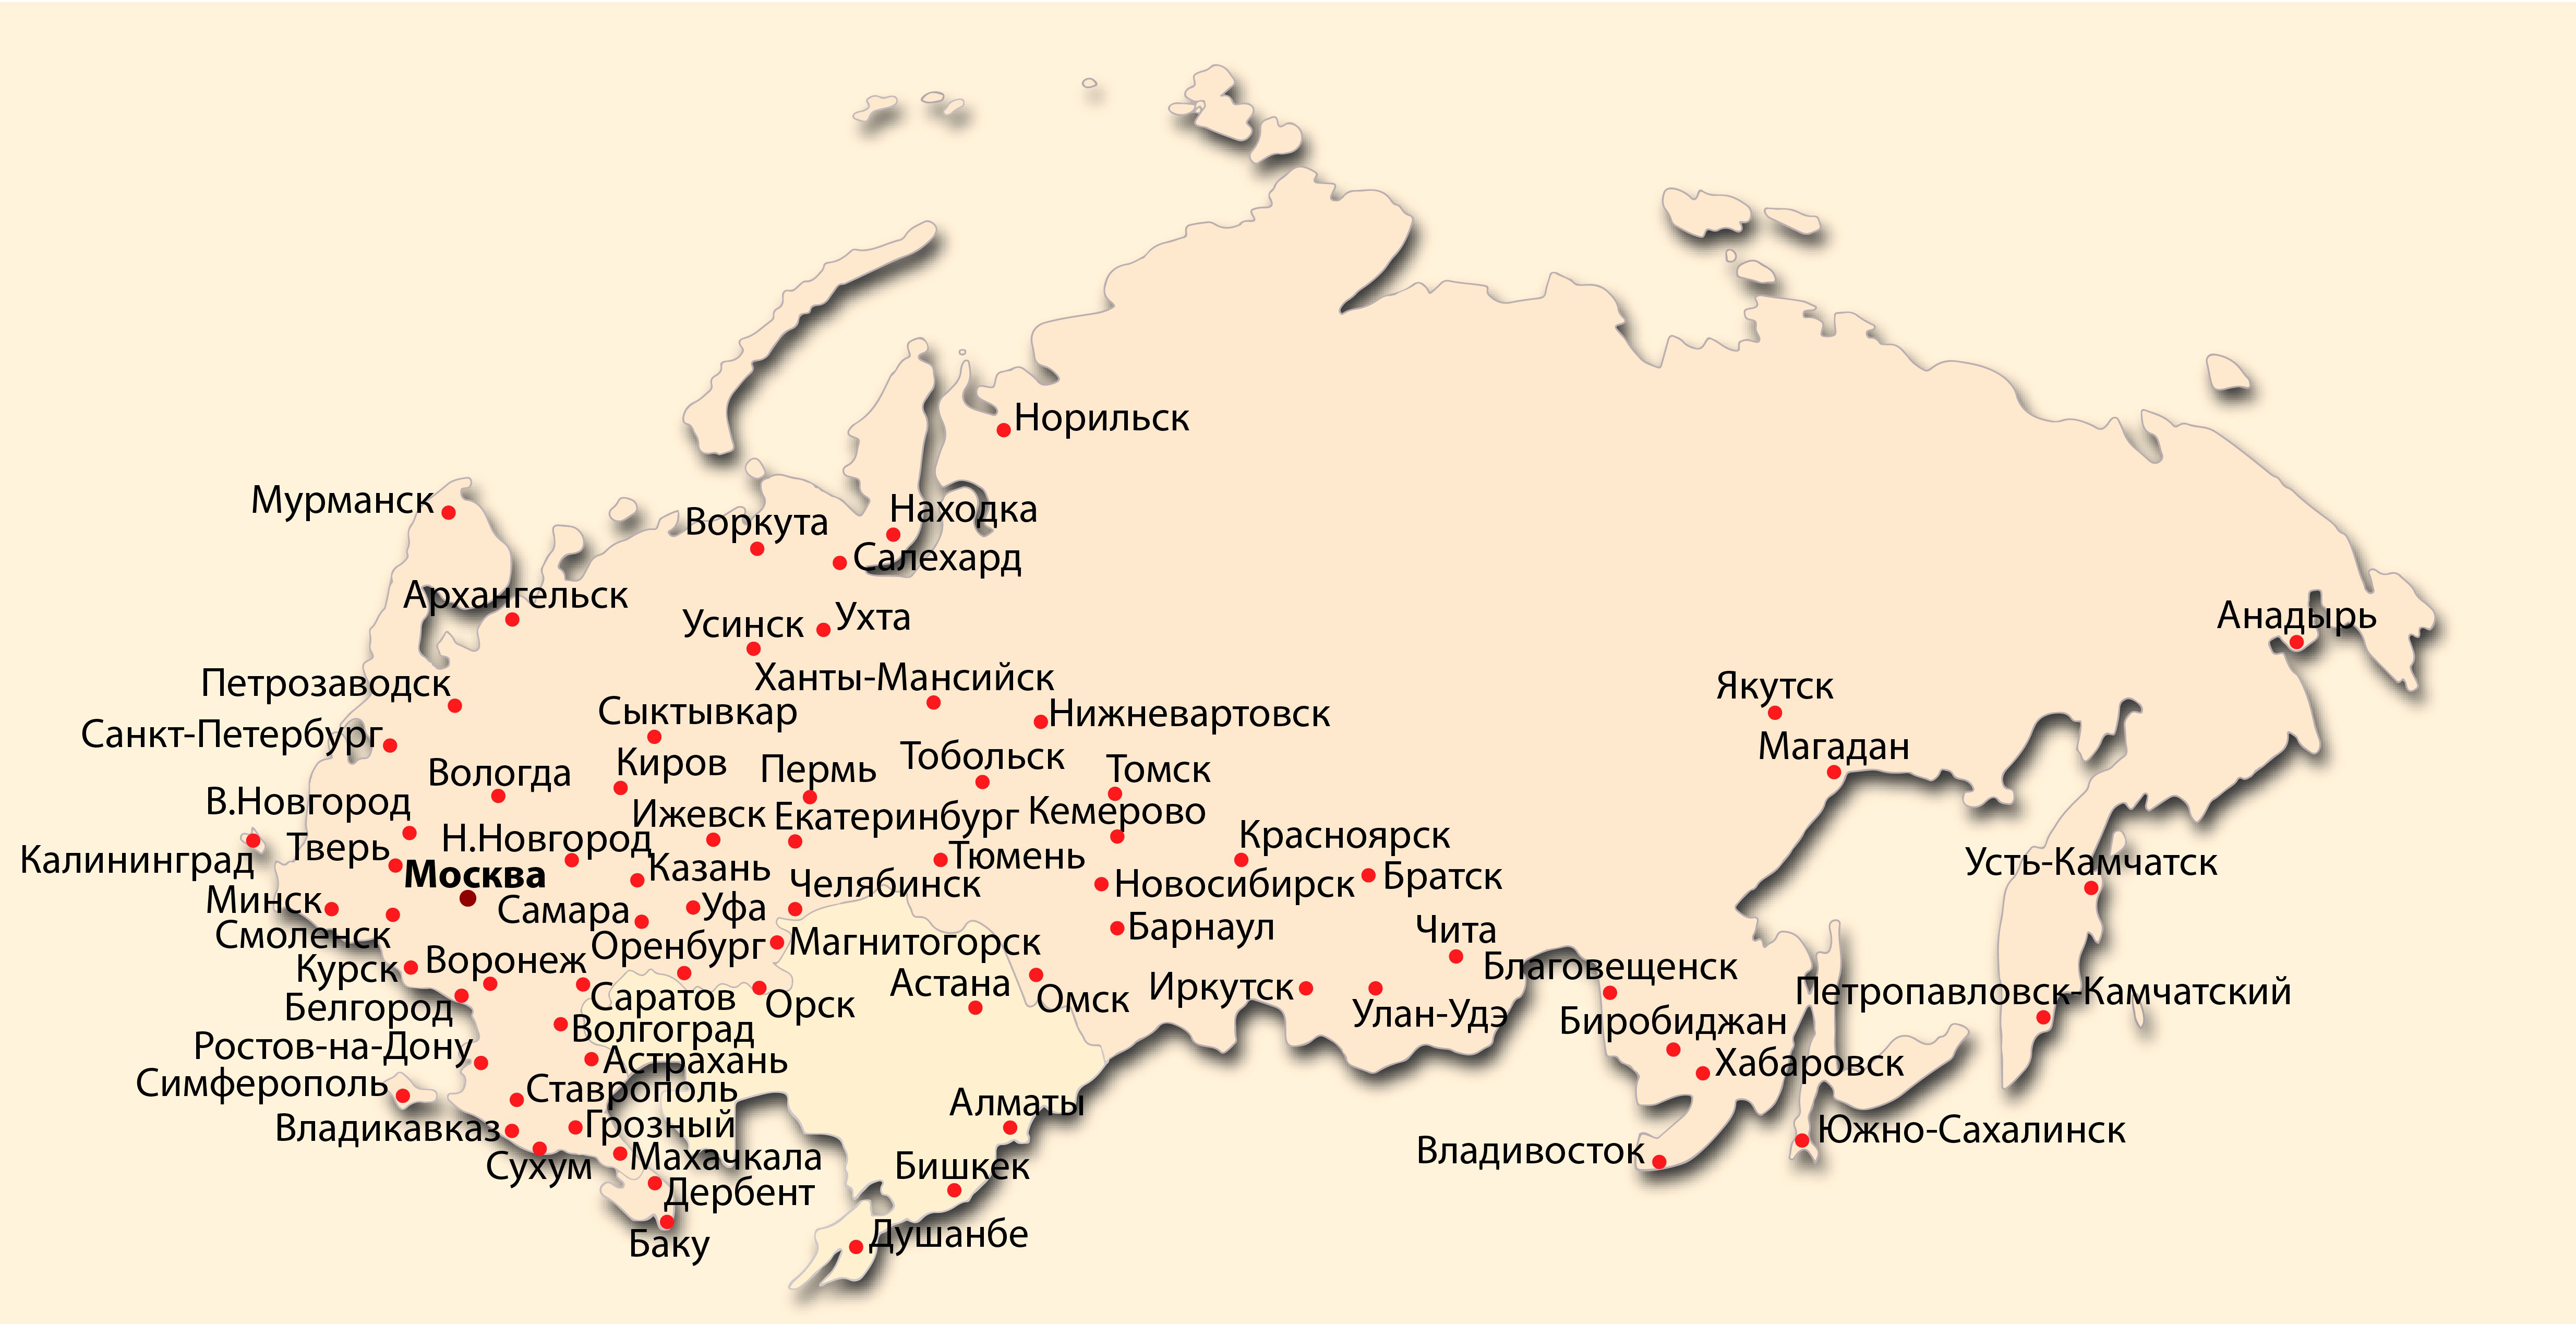 Показать карту тобольска. Норильск на карте России с городами. Расположение Норильска на карте России. Город Норильск на карте. Норильск на катретроссии.